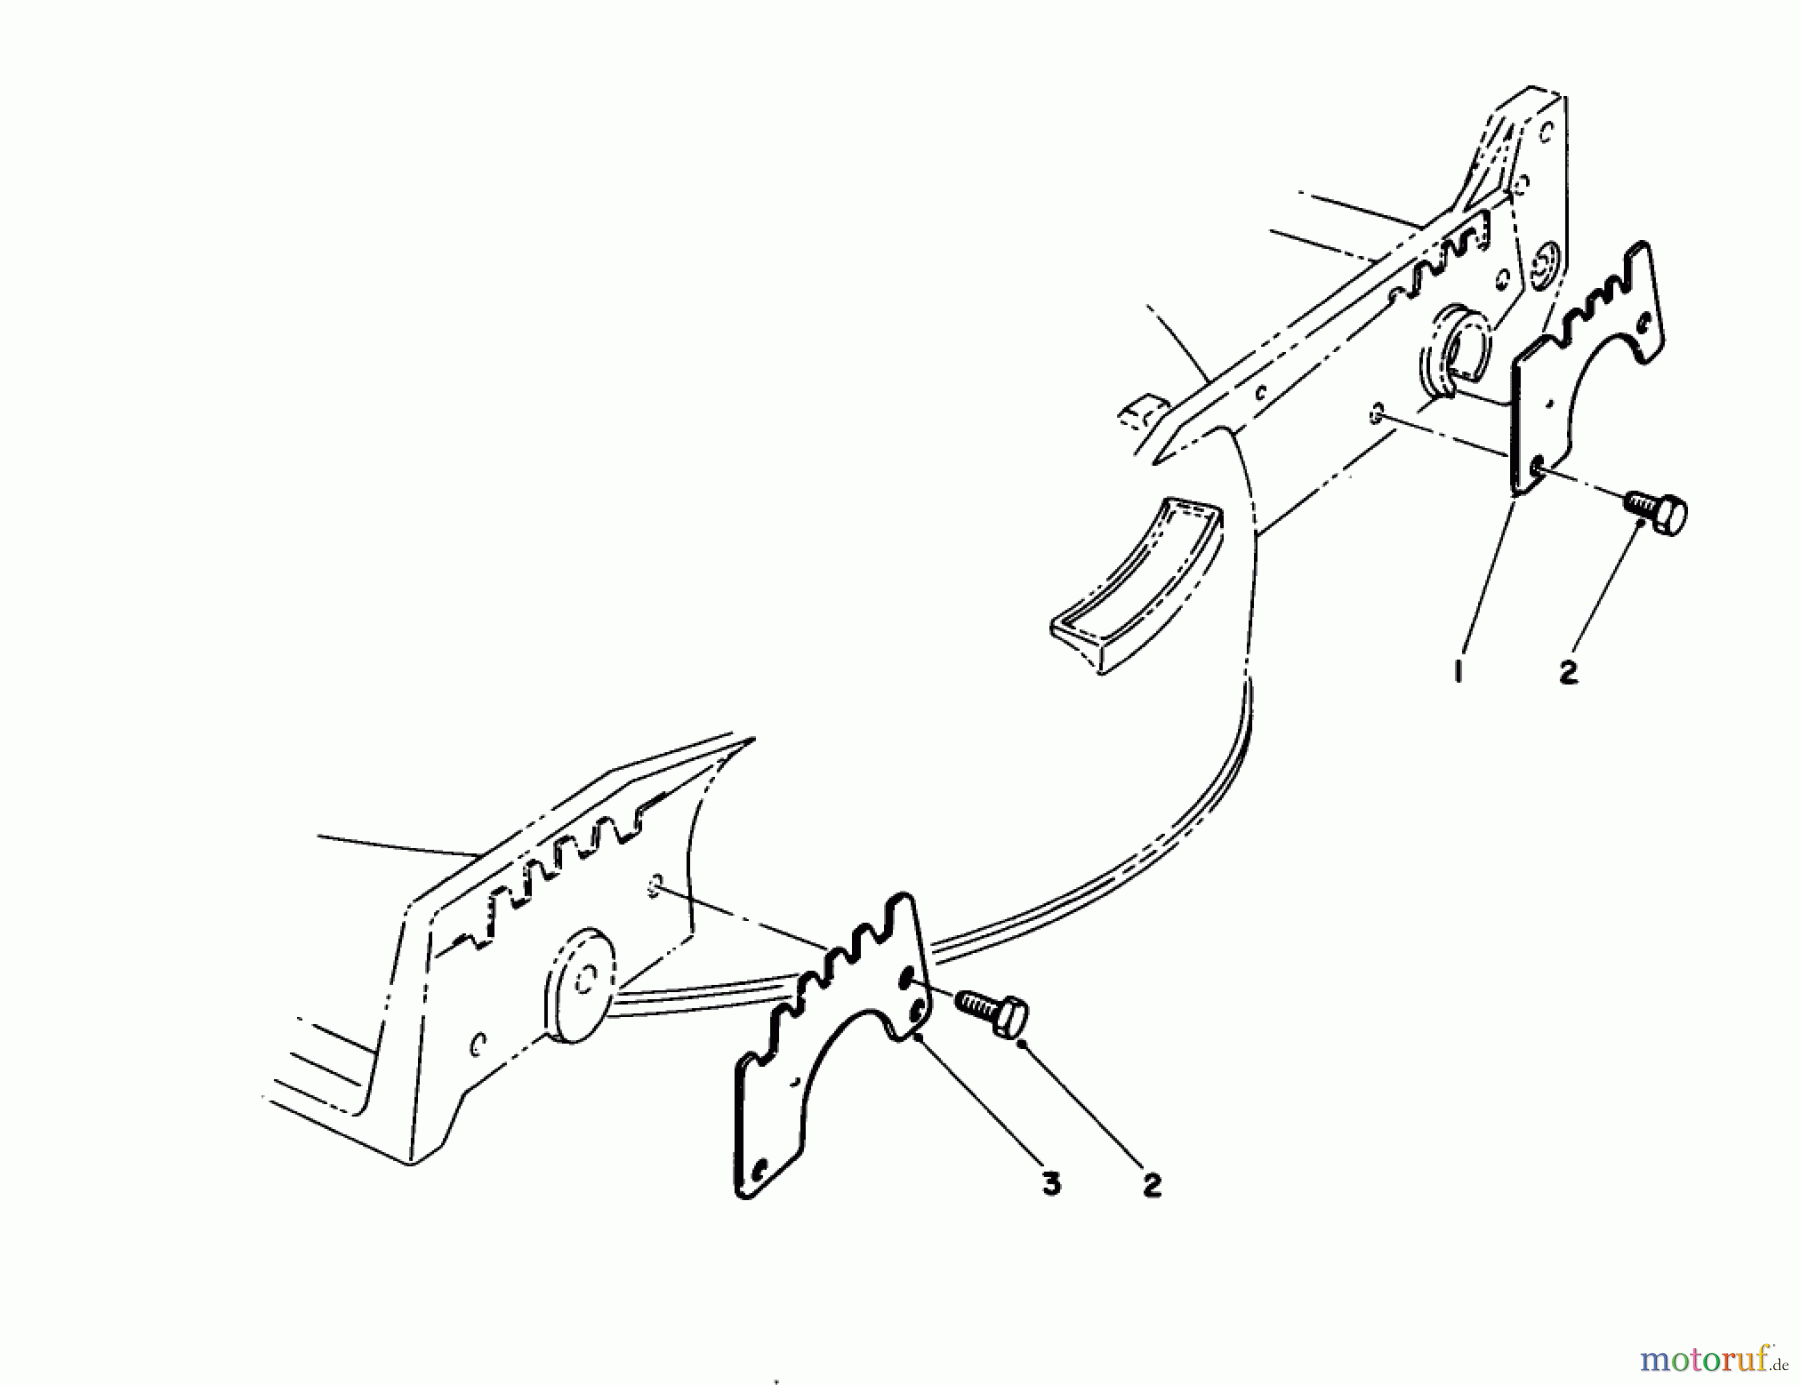  Toro Neu Mowers, Walk-Behind Seite 1 20214 - Toro Lawnmower, 1991 (1000001-1999999) WEAR PLATE MODEL NO. 49-4080 (OPTIONAL)